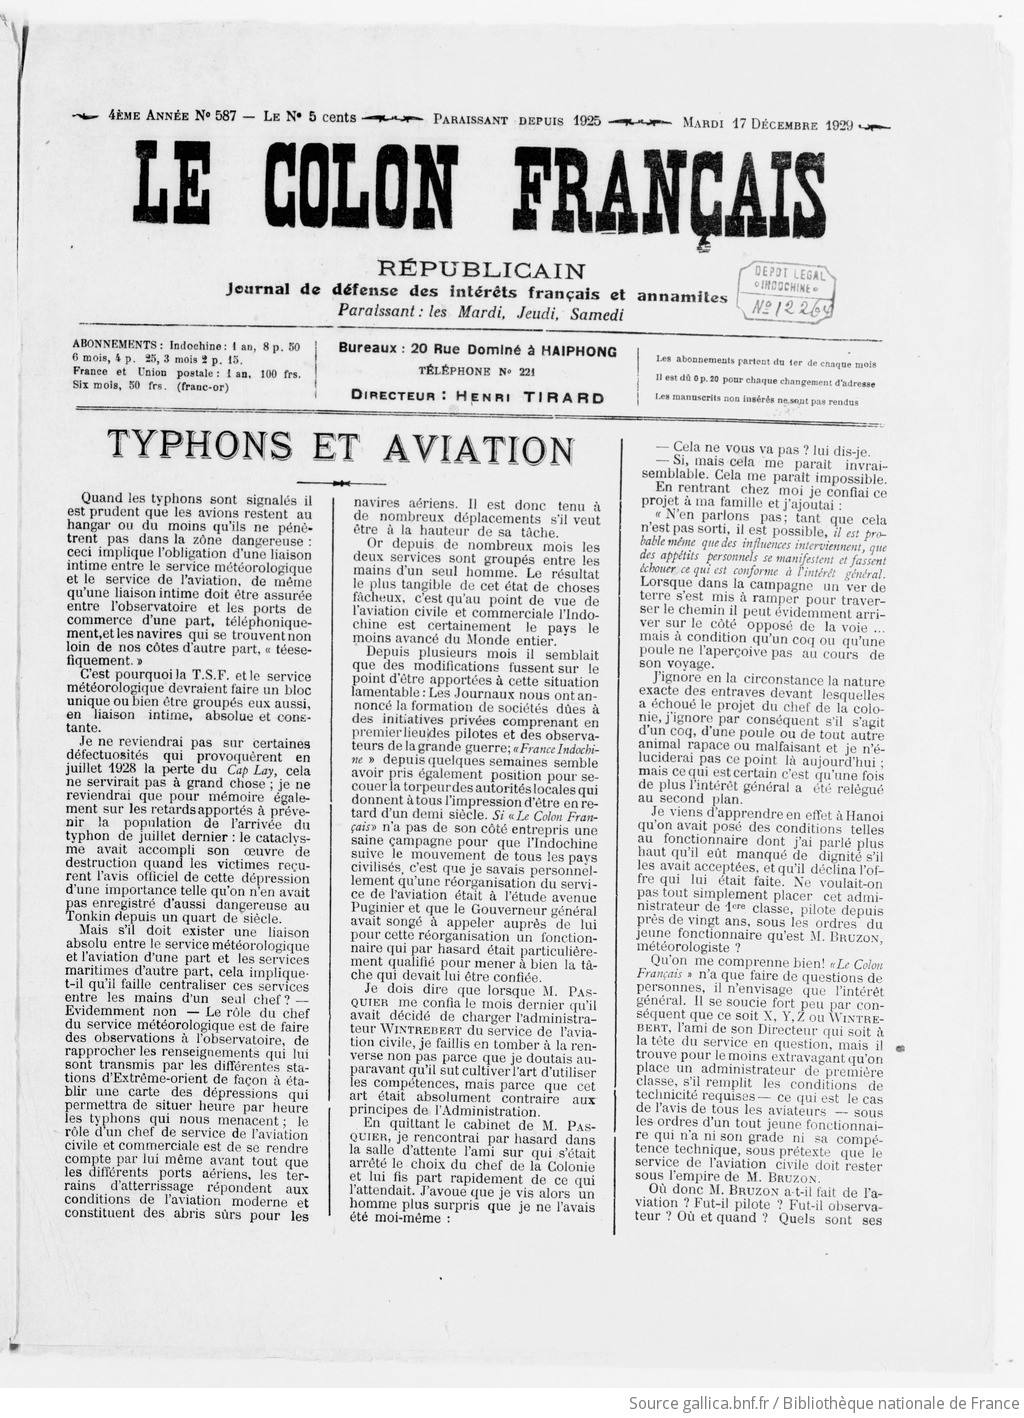 Le Colon français républicain. Journal de défense des intérêts français et annamites  1925-1934